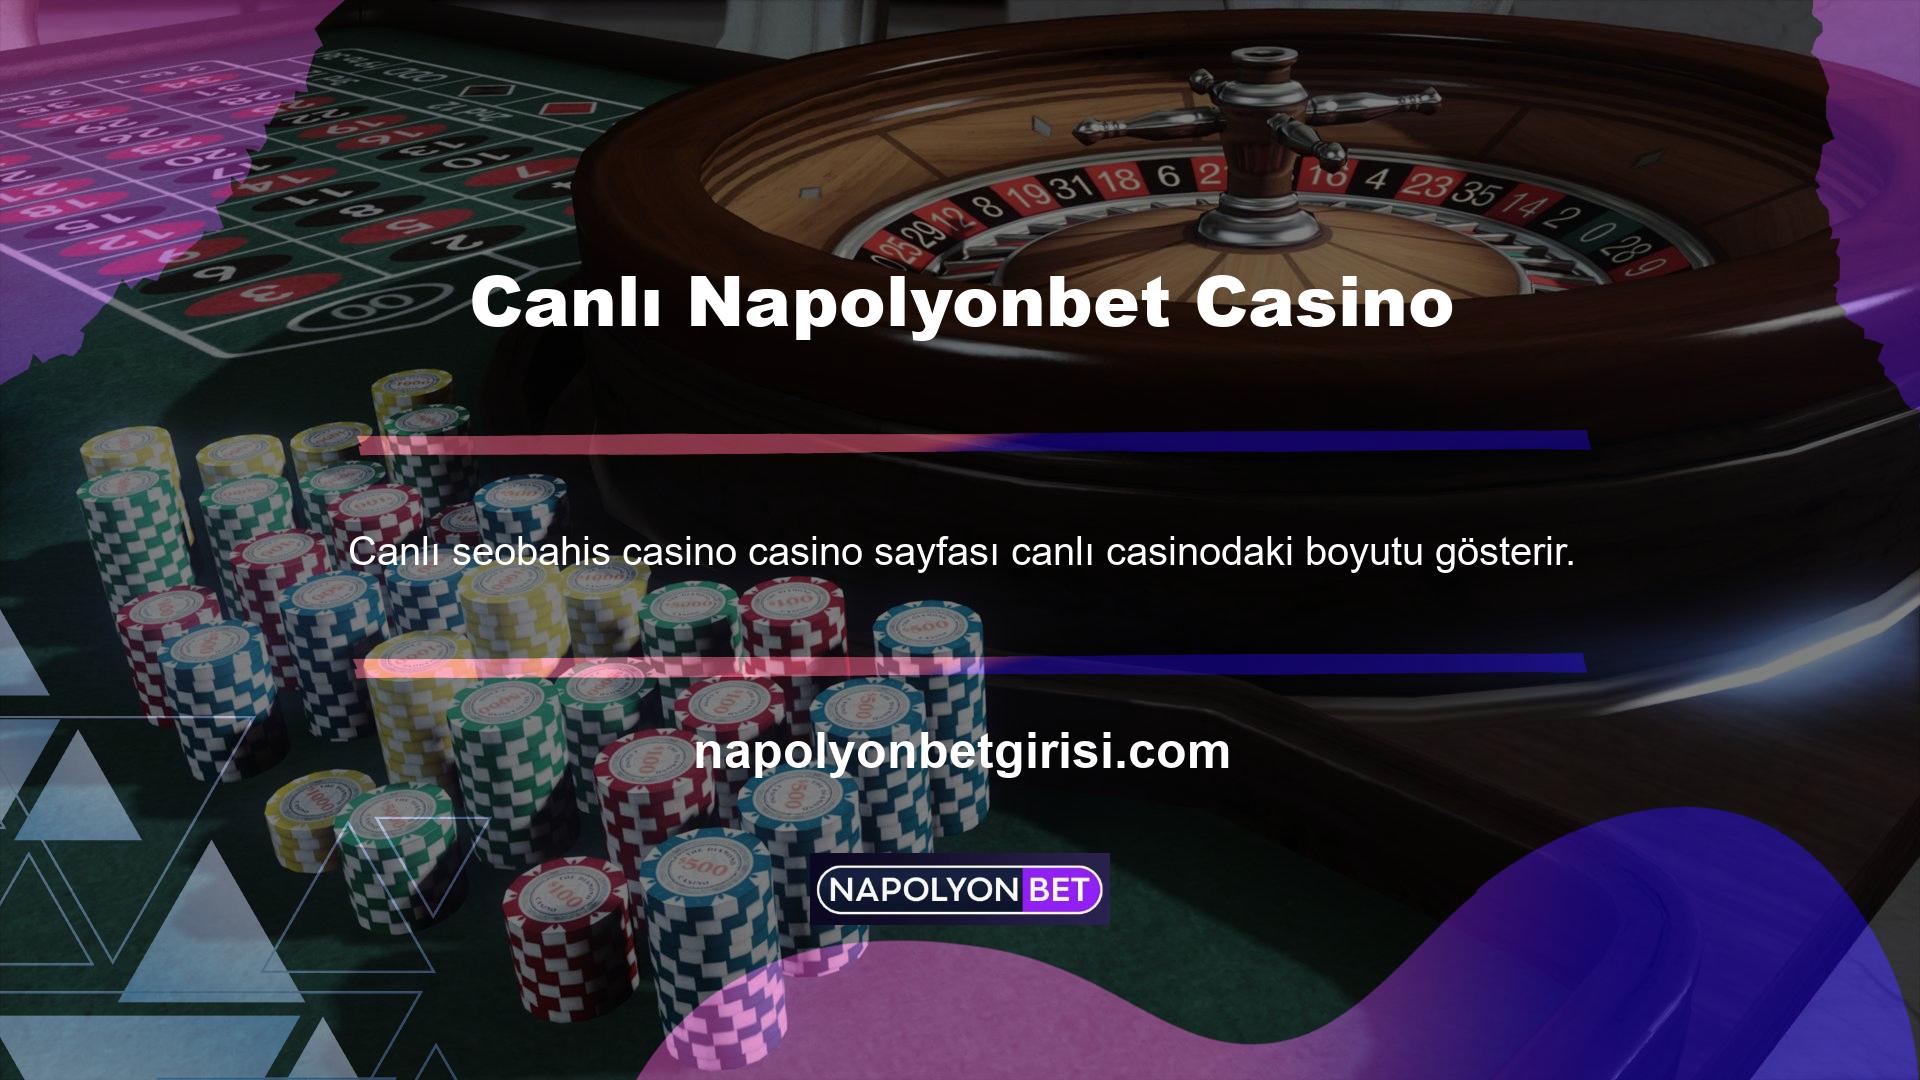 Napolyonbet canlı casino oyunlarıyla oldukça başarılı olmuştur